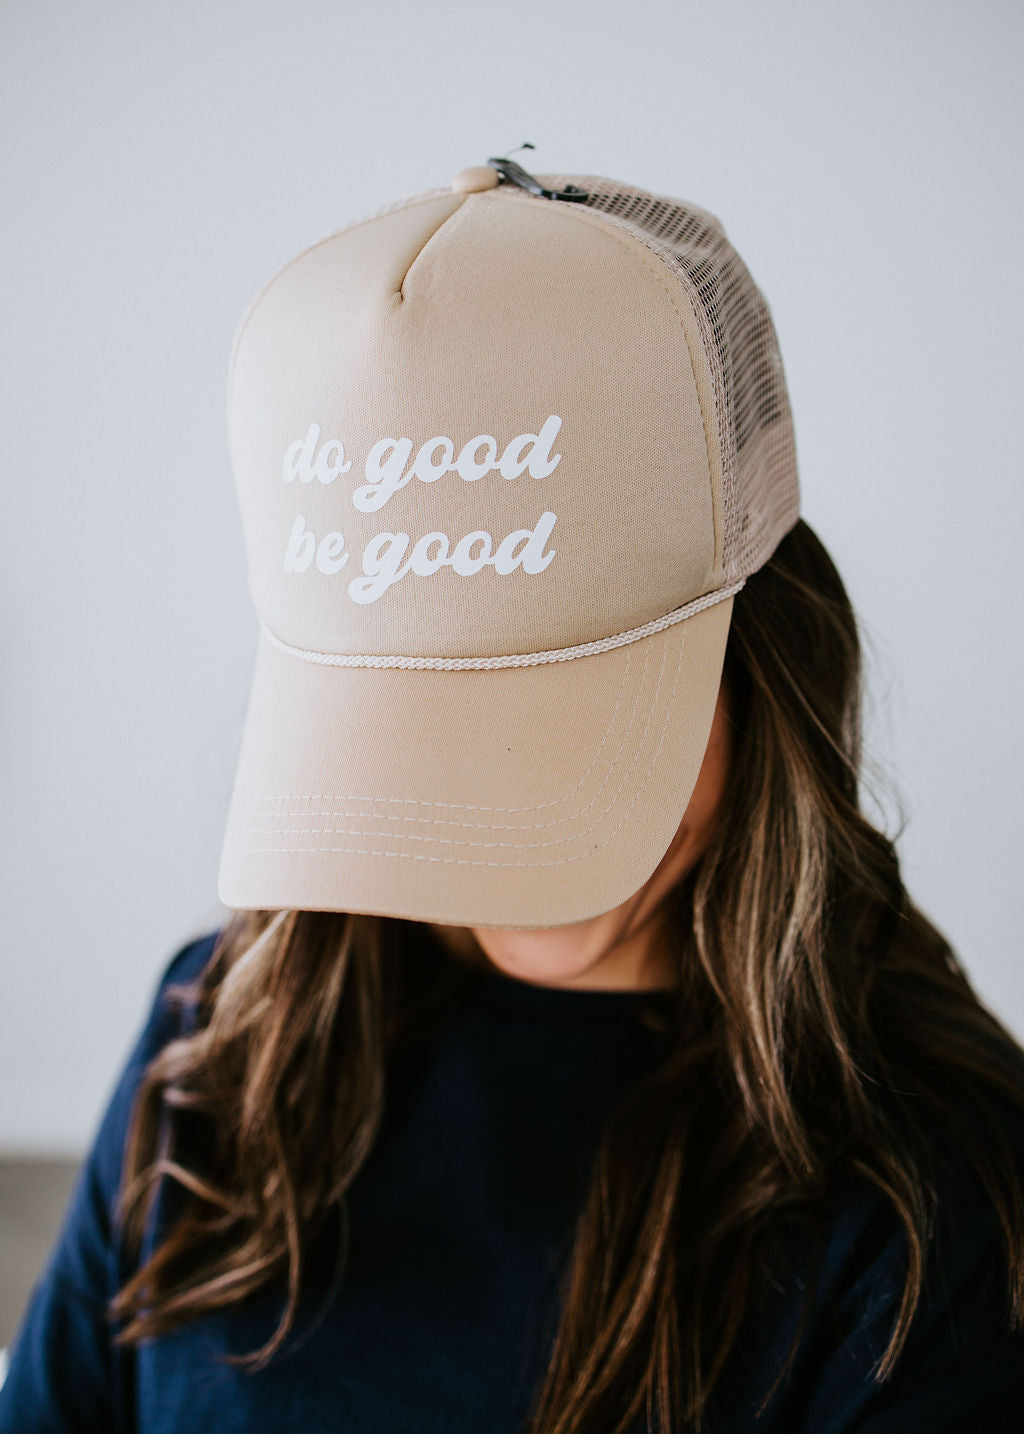 Do Good Be Good Cap